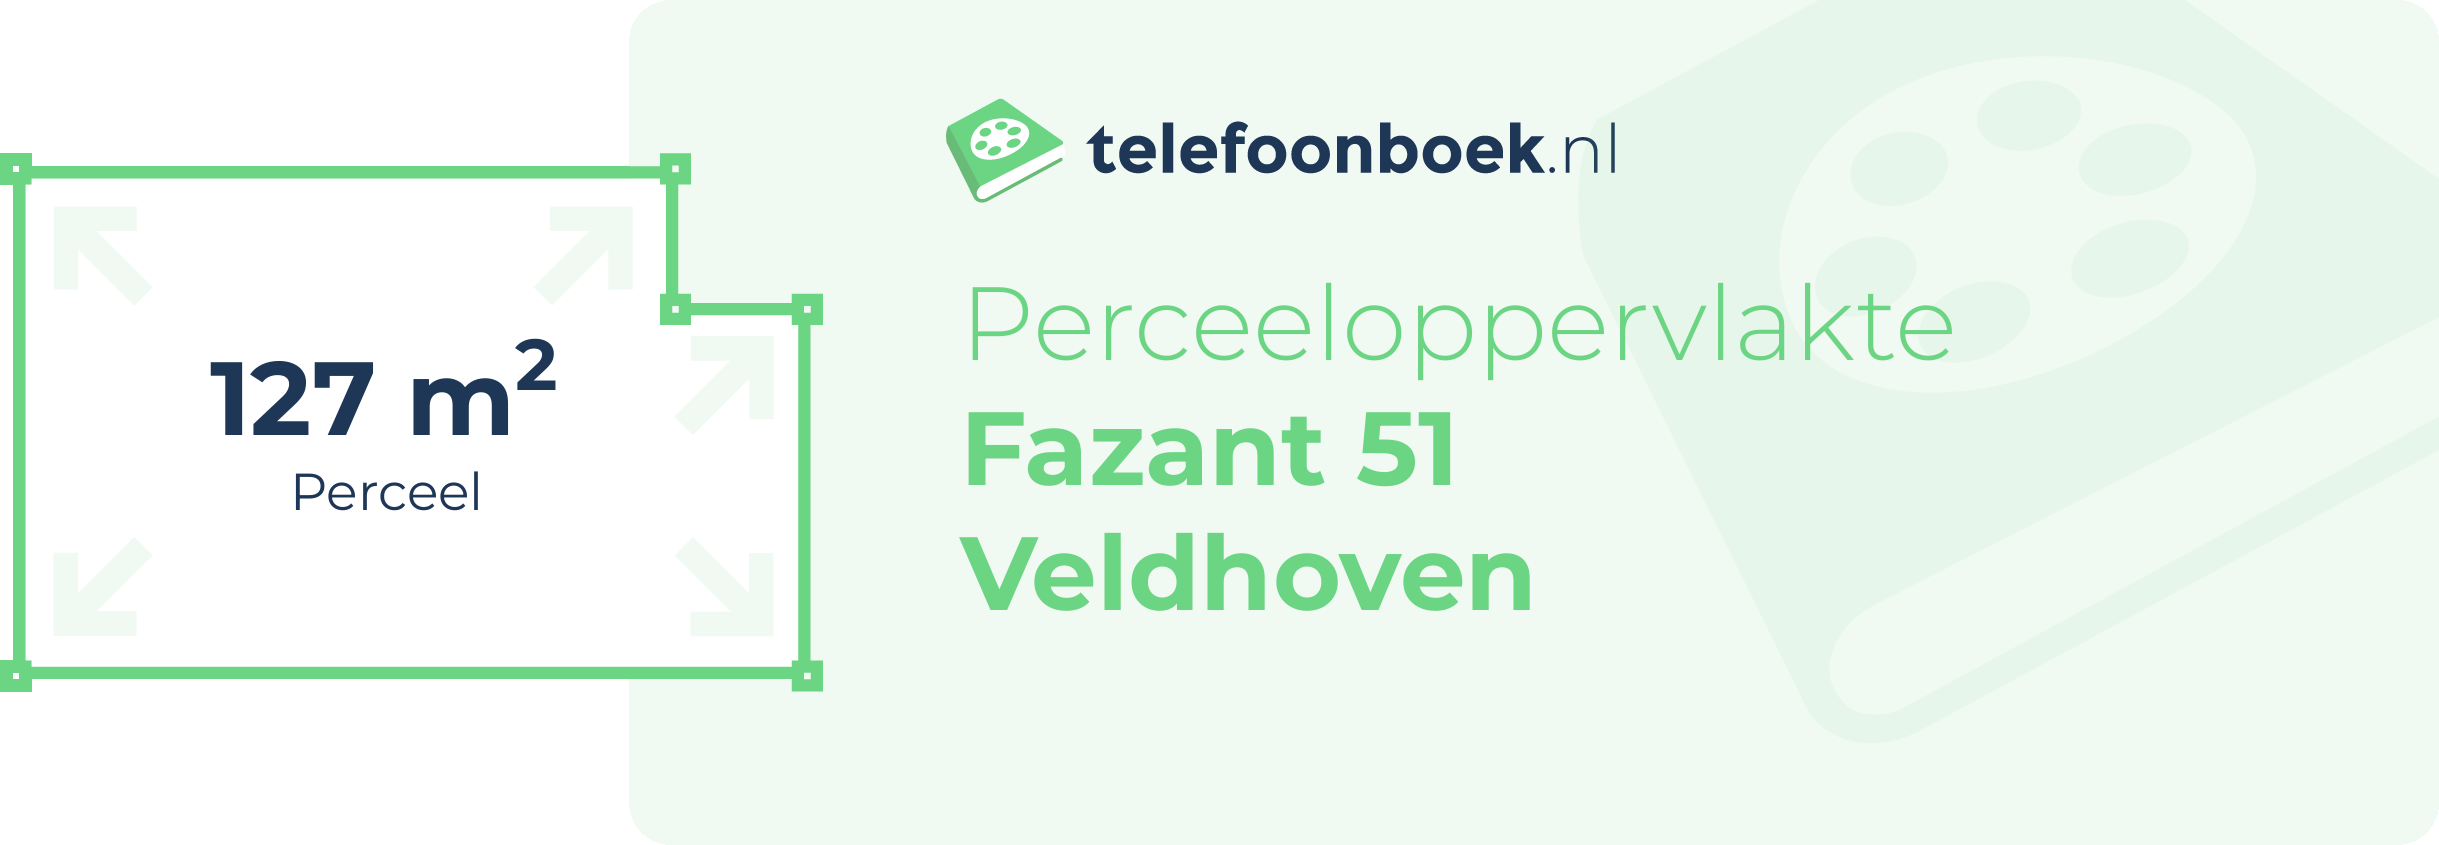 Perceeloppervlakte Fazant 51 Veldhoven